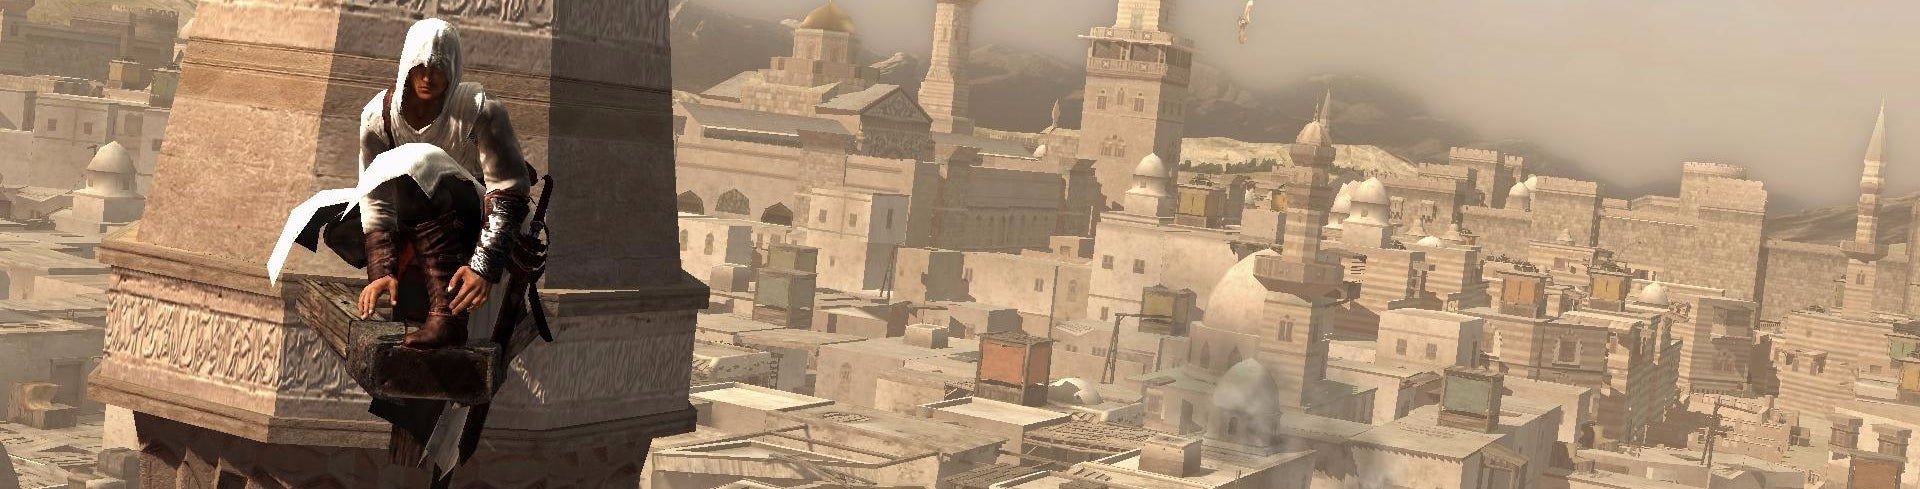 Obrazki dla Korzenie Assassin's Creed - rozmowa z twórcą serii